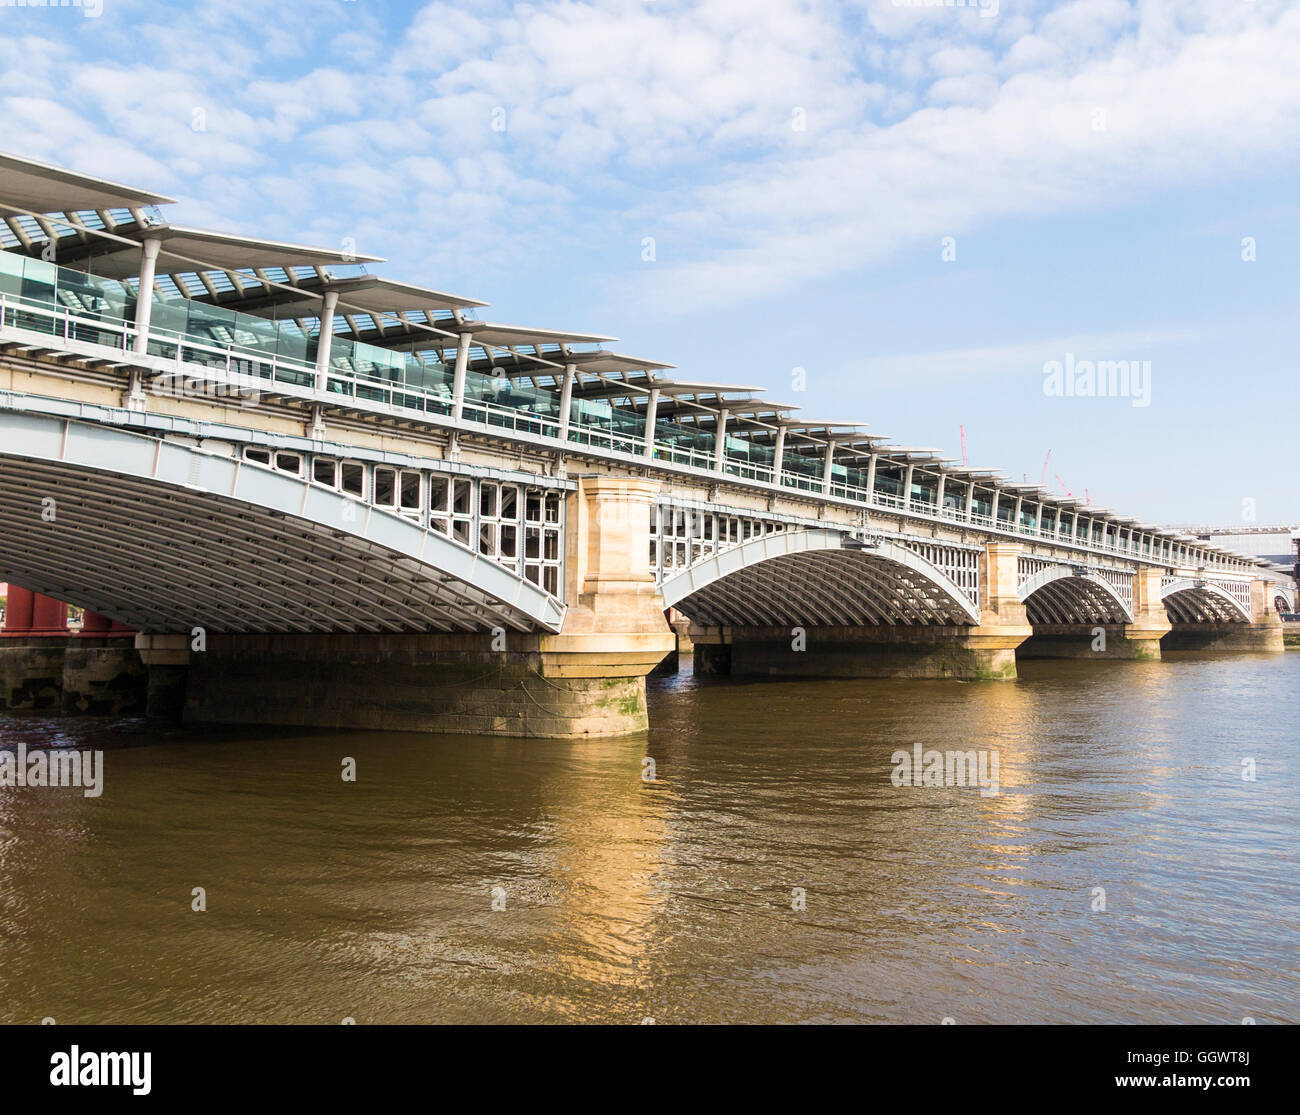 Blackfriars Bridge verbindet Blackfriars Station über die Themse, London, UK an einem sonnigen Tag mit blauem Himmel Stockfoto